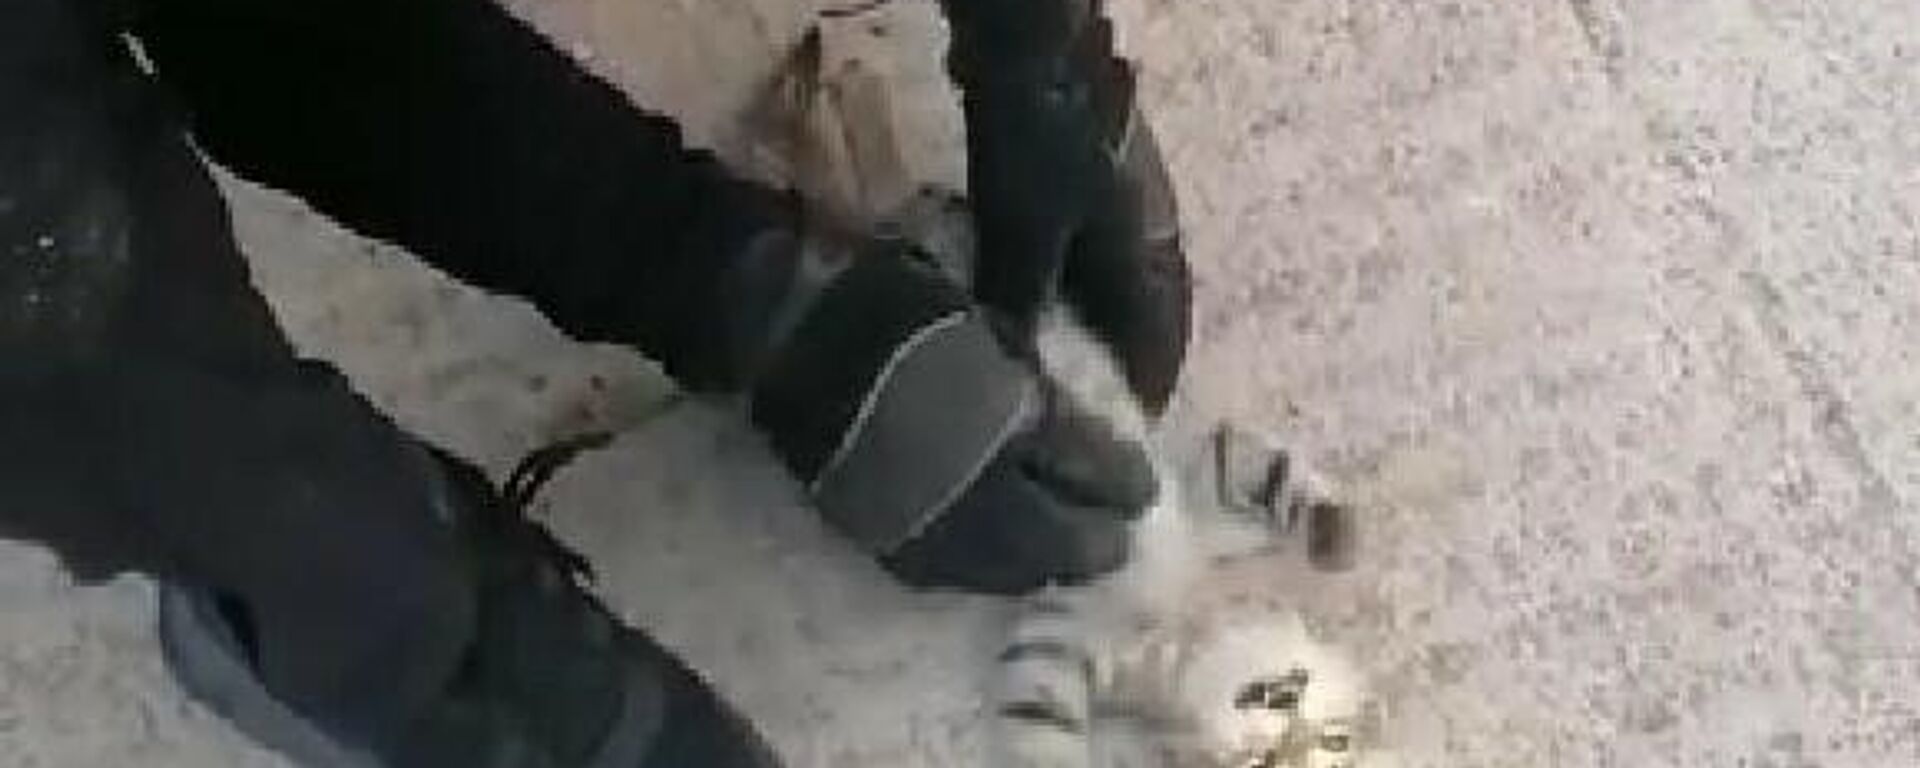 Kocaeli’nin Derince ilçesinde iki bina arasında sıkışarak kalbi duran yavru kedi, kendisini kurtaran itfaiye ekibinin kalp masajı ile hayata döndü. İtfaiye eri dakikalarca kalp masajı yaparak hayata döndürdüğü kediyi daha sonra elleriyle besledi. - Sputnik Türkiye, 1920, 26.09.2021